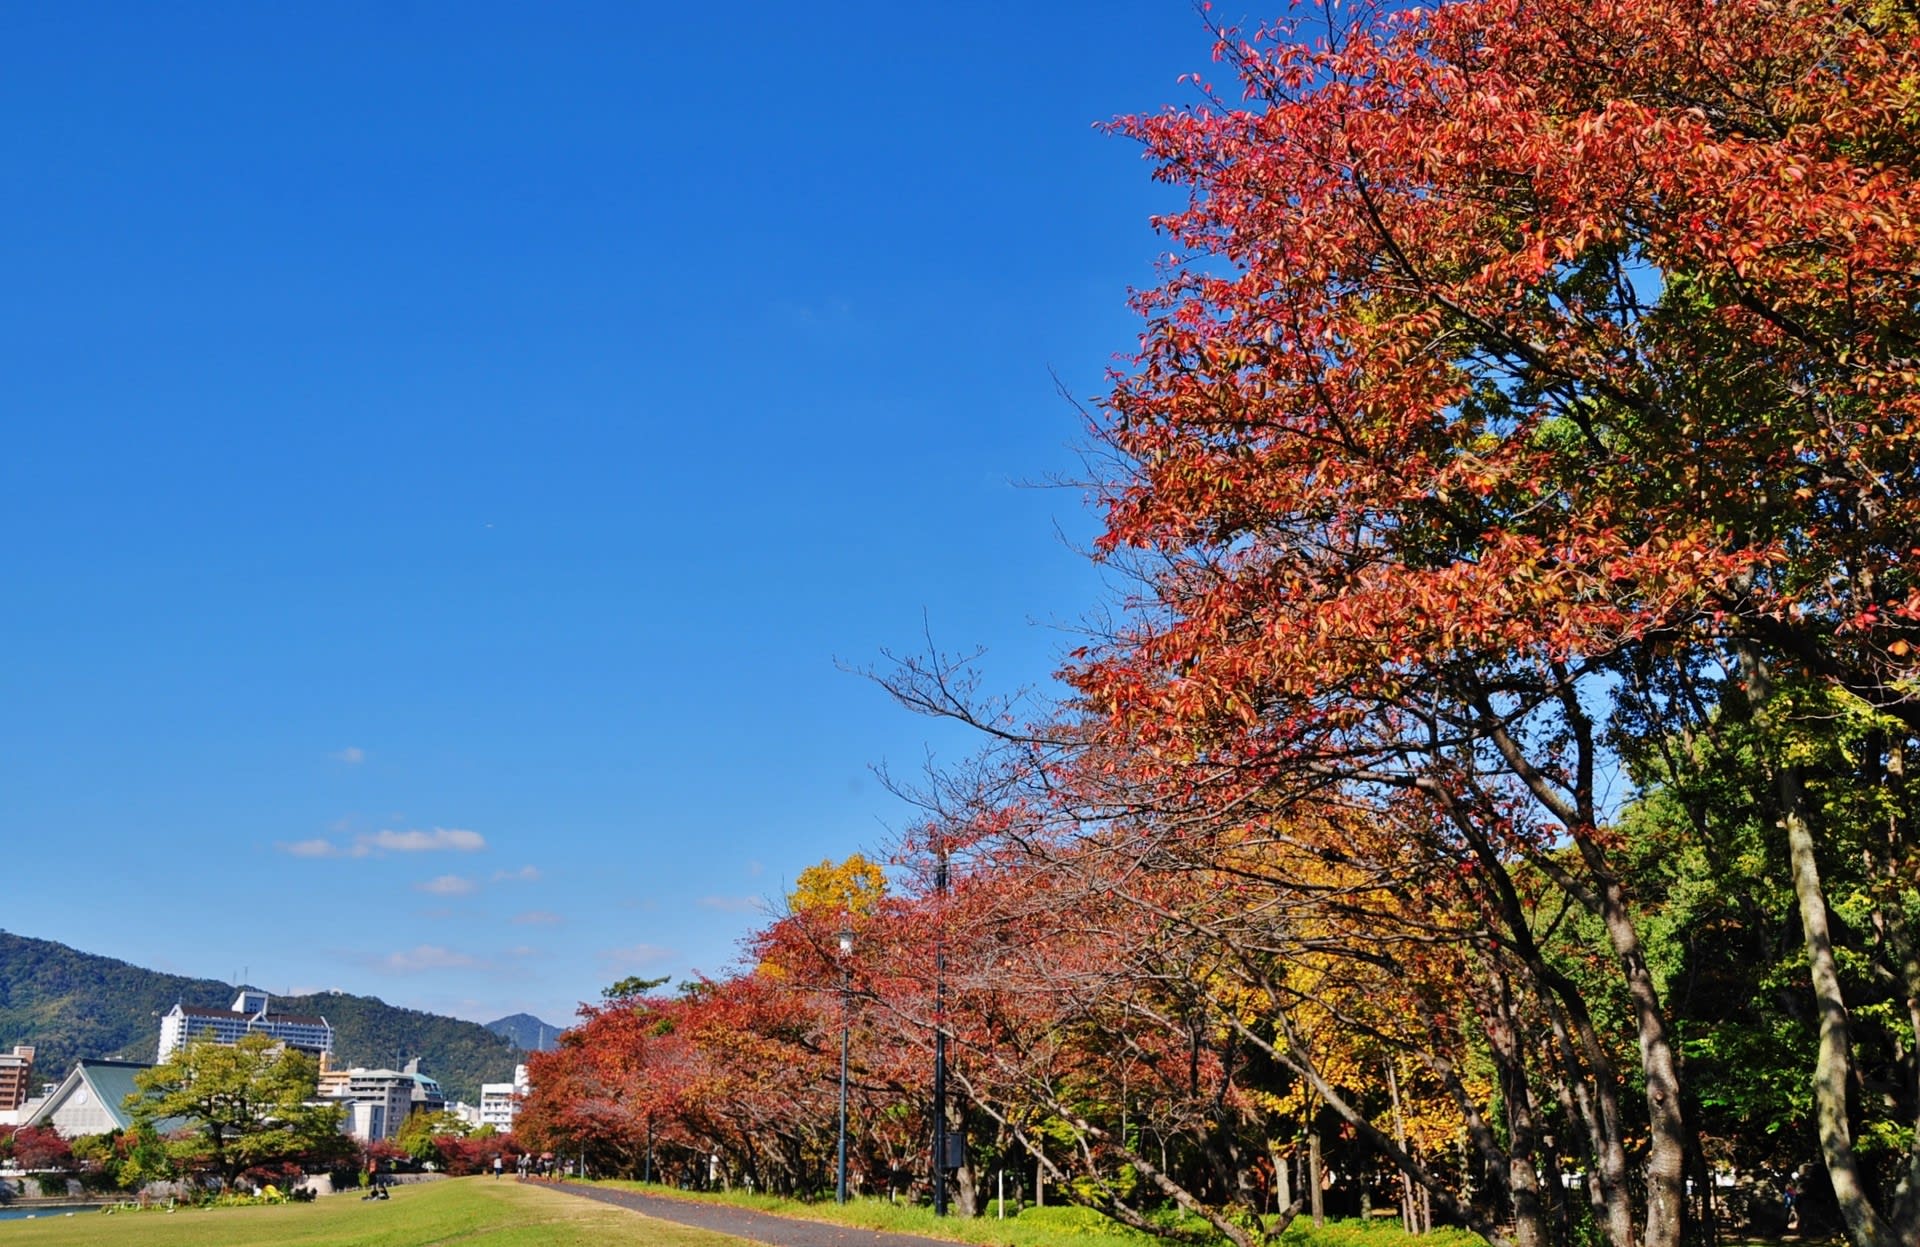 過去の写真 桜紅葉 広島市 綺麗な写真 日々出来事